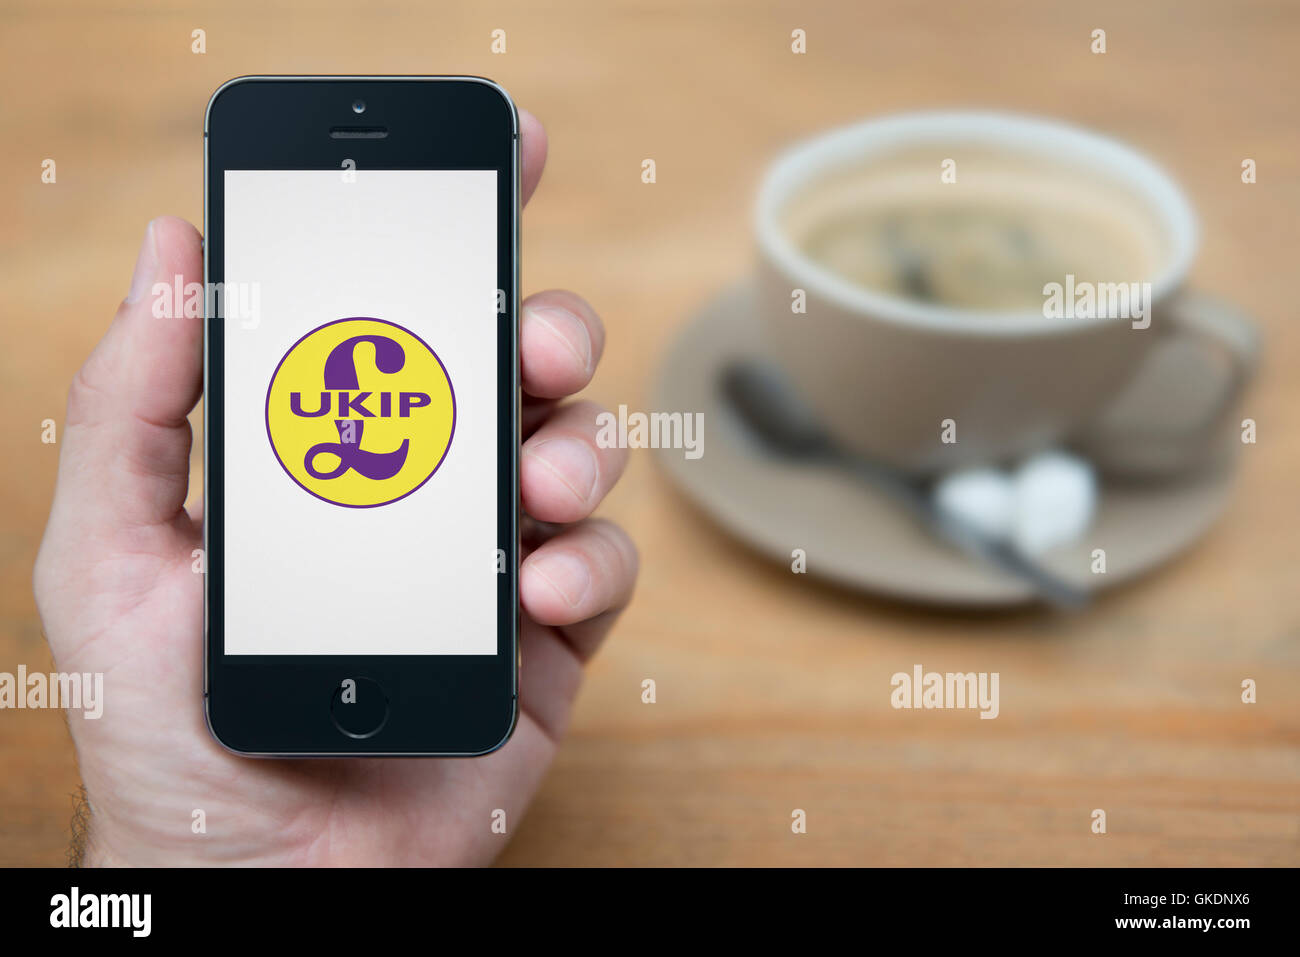 Un uomo guarda al suo iPhone che visualizza il logo dell'UKIP, mentre sat con una tazza di caffè (solo uso editoriale). Foto Stock